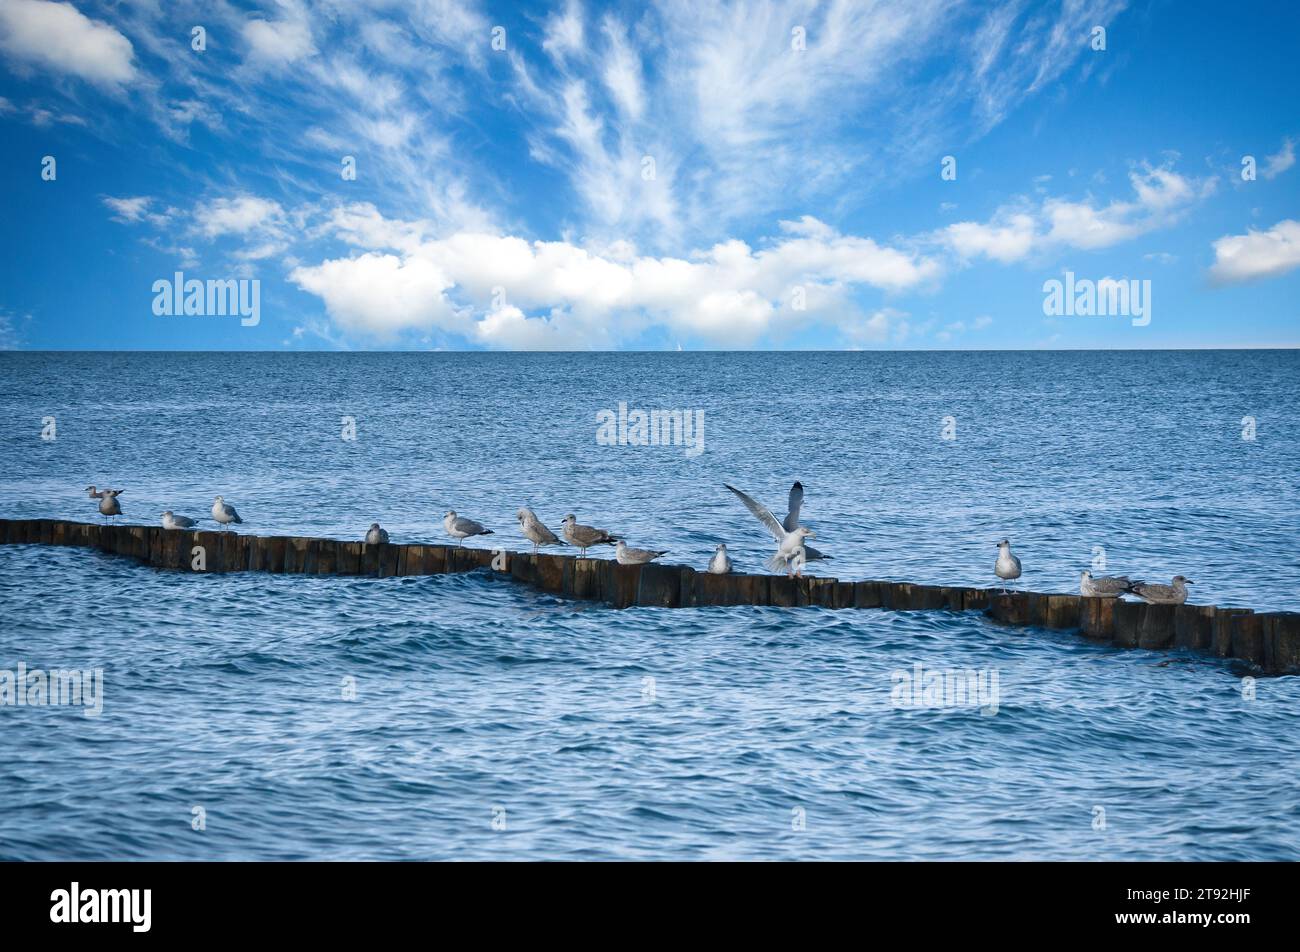 Mouettes sur un groyne dans la mer Baltique. Vagues et ciel bleu. Côte par la mer. Photo d'animal Banque D'Images